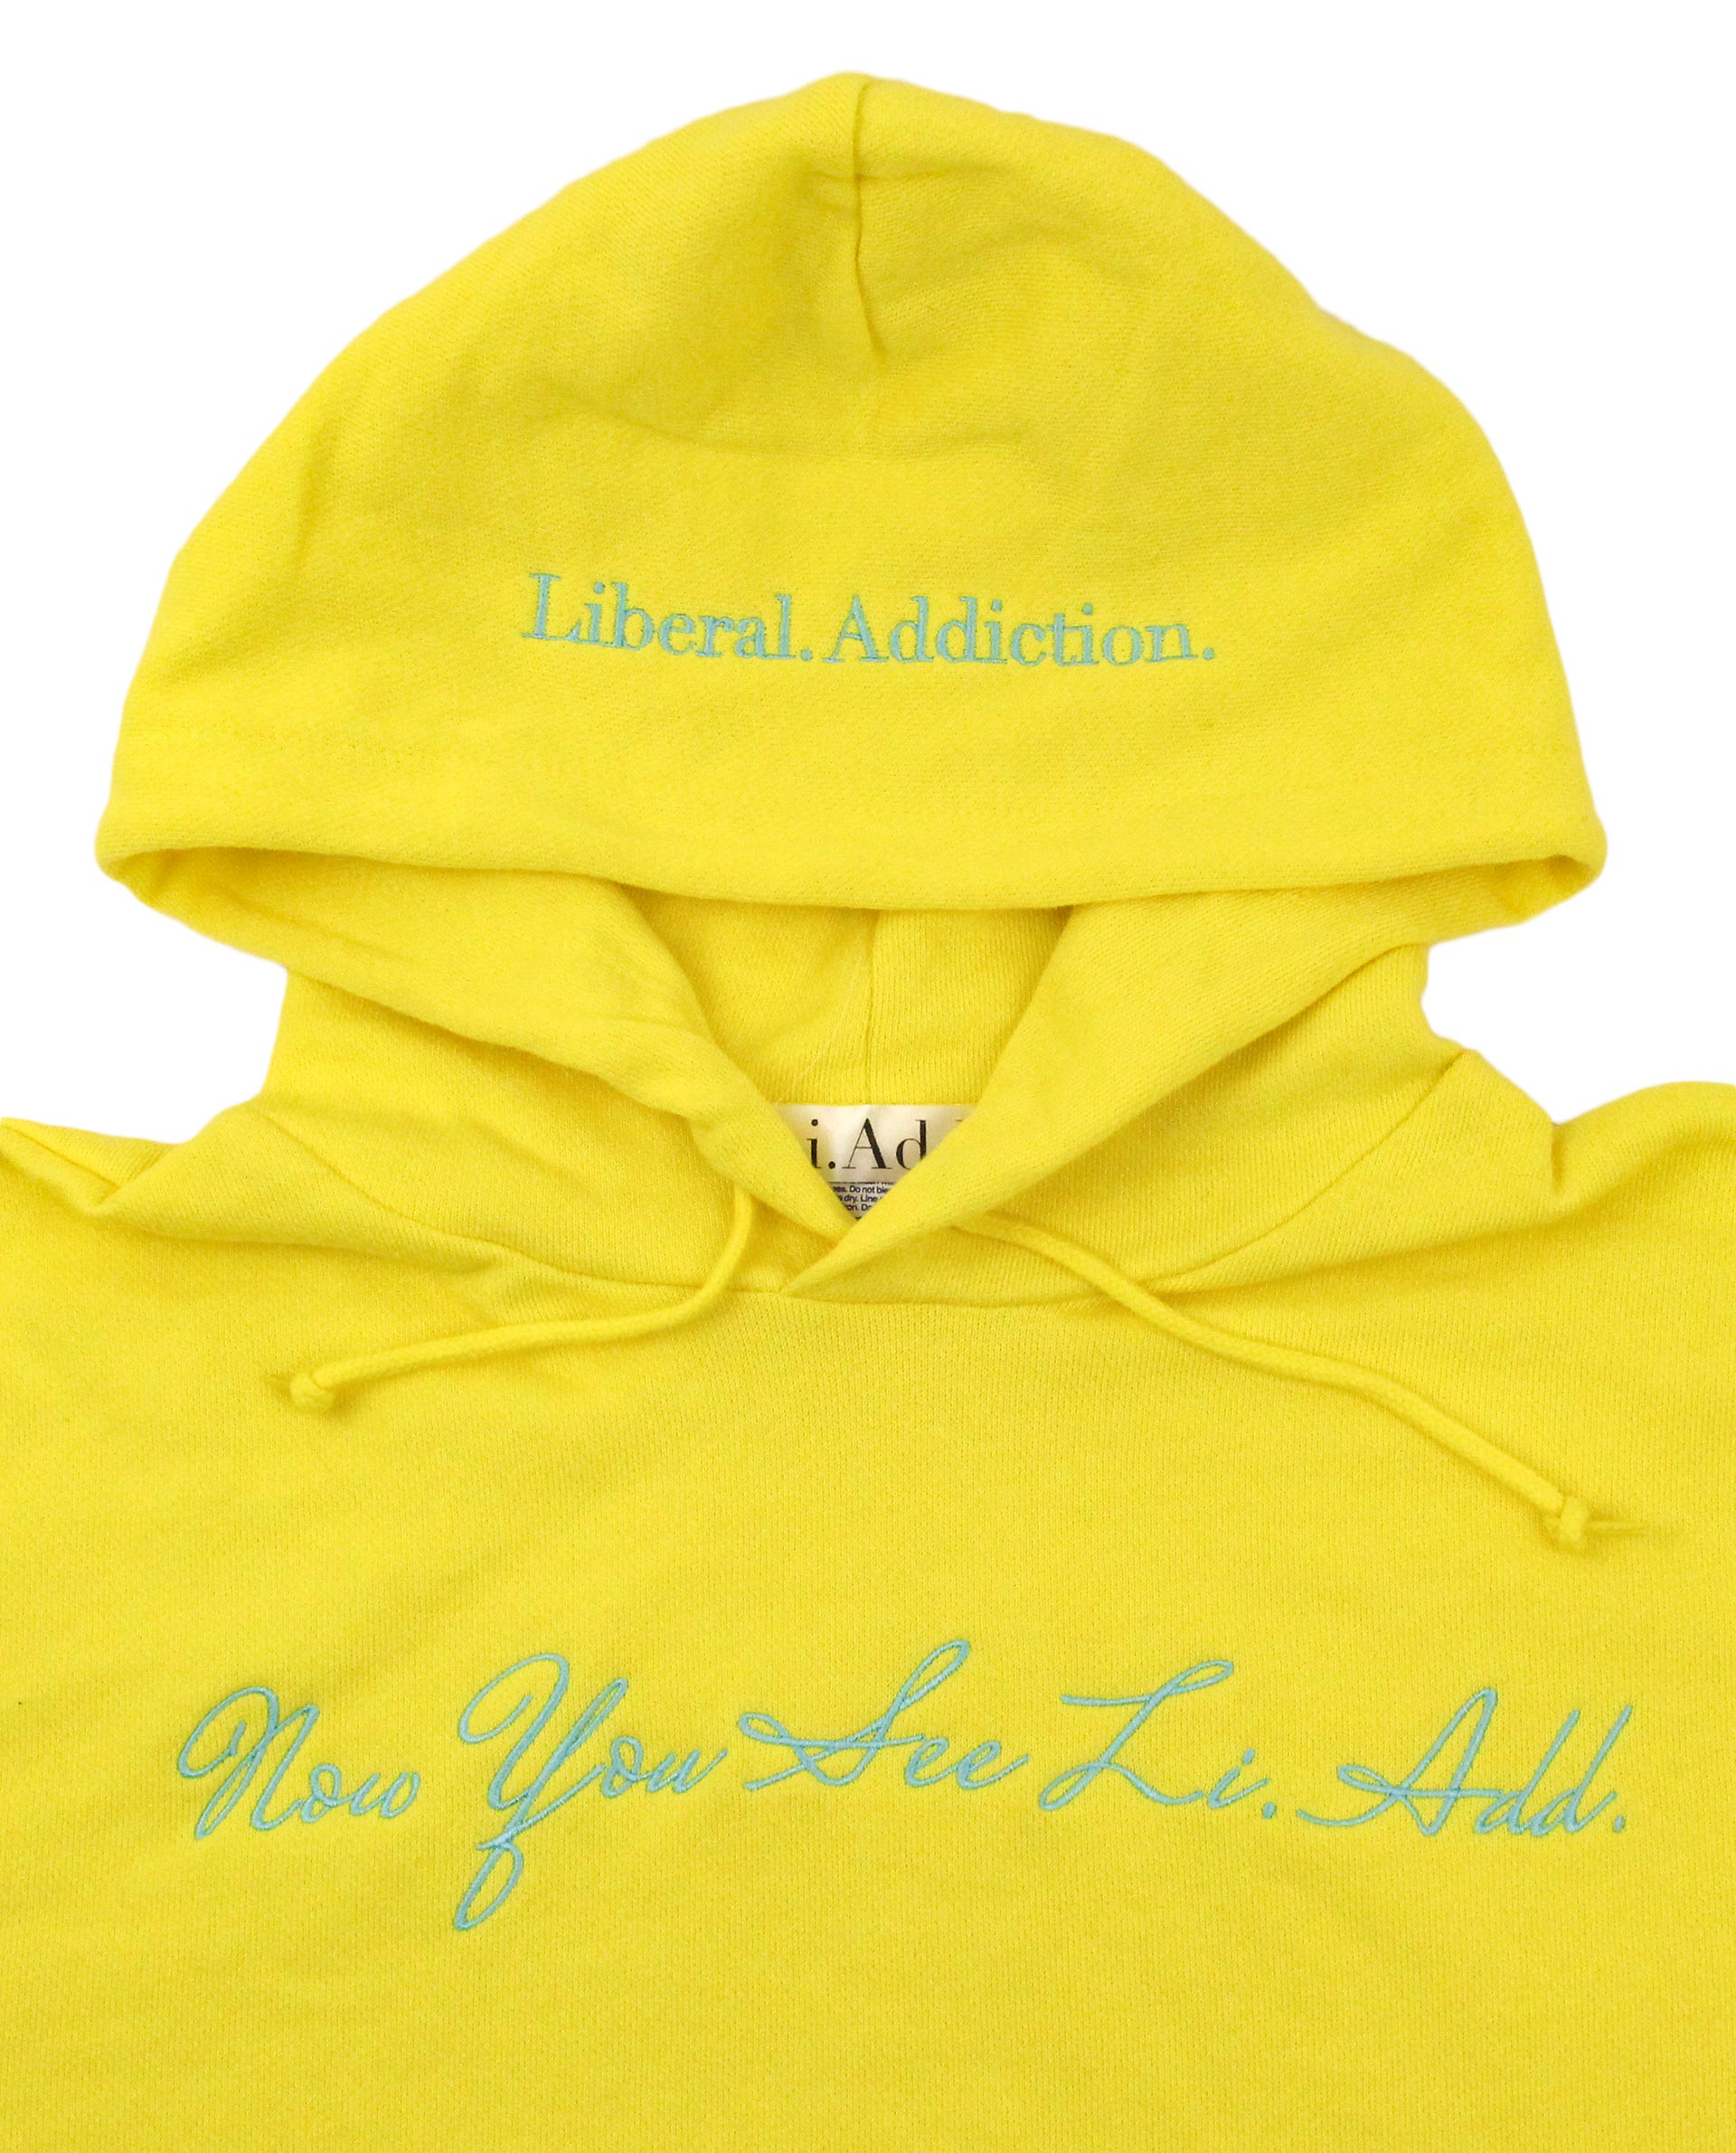 シンプルロゴ刺繍プルオーバーパーカーイエロー / Liberal Addiction 